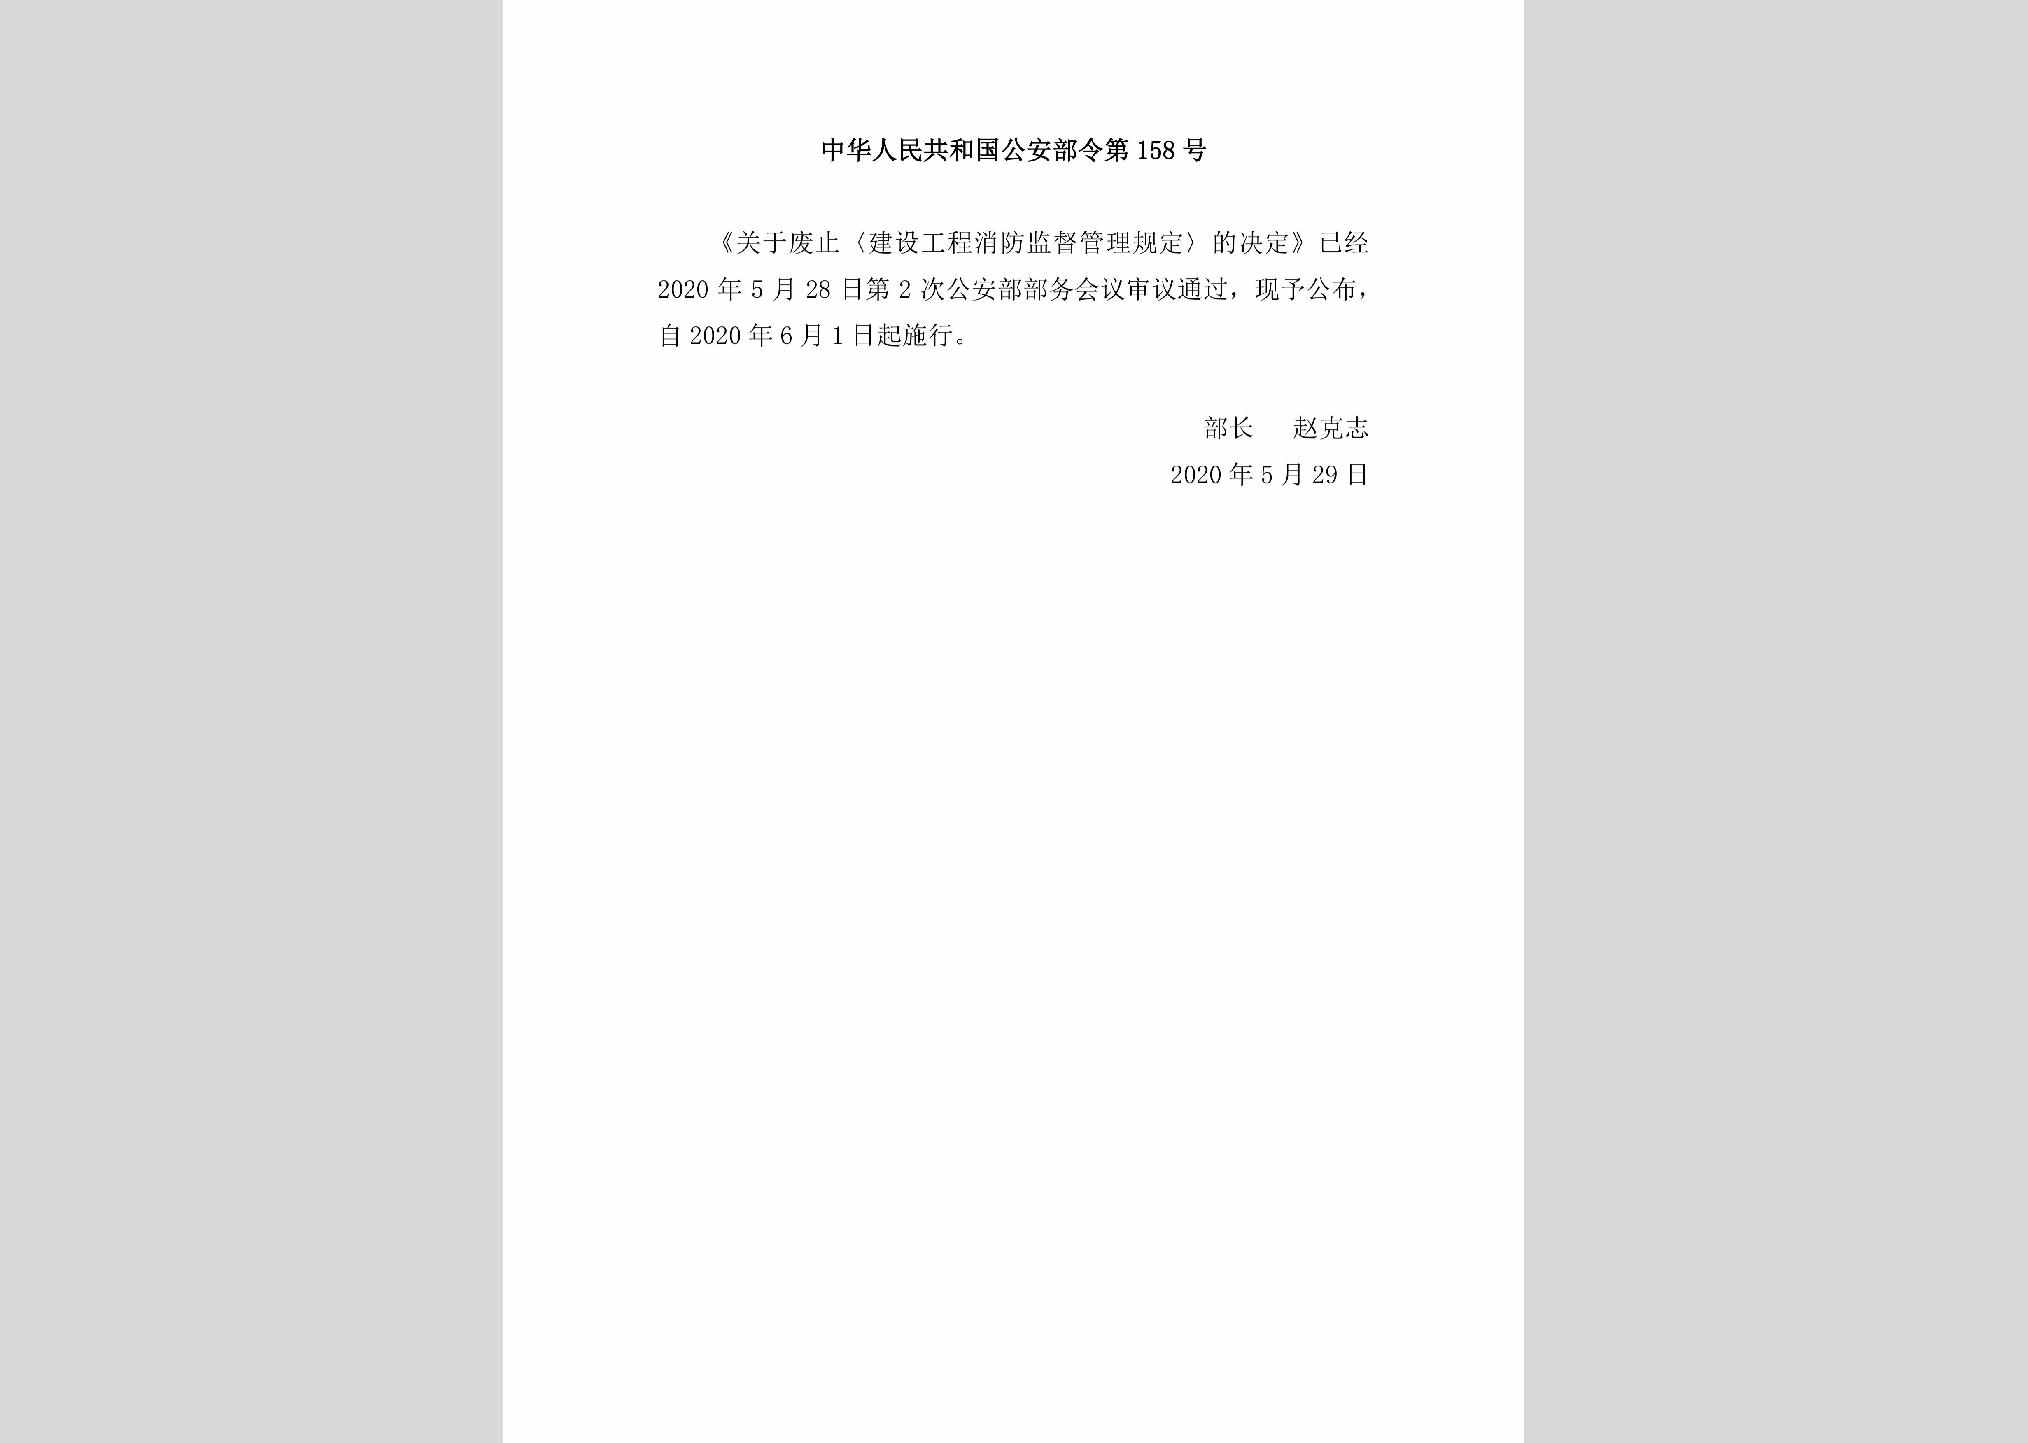 中华人民共和国公安部令第158号：关于废止《建设工程消防监督管理规定》的决定